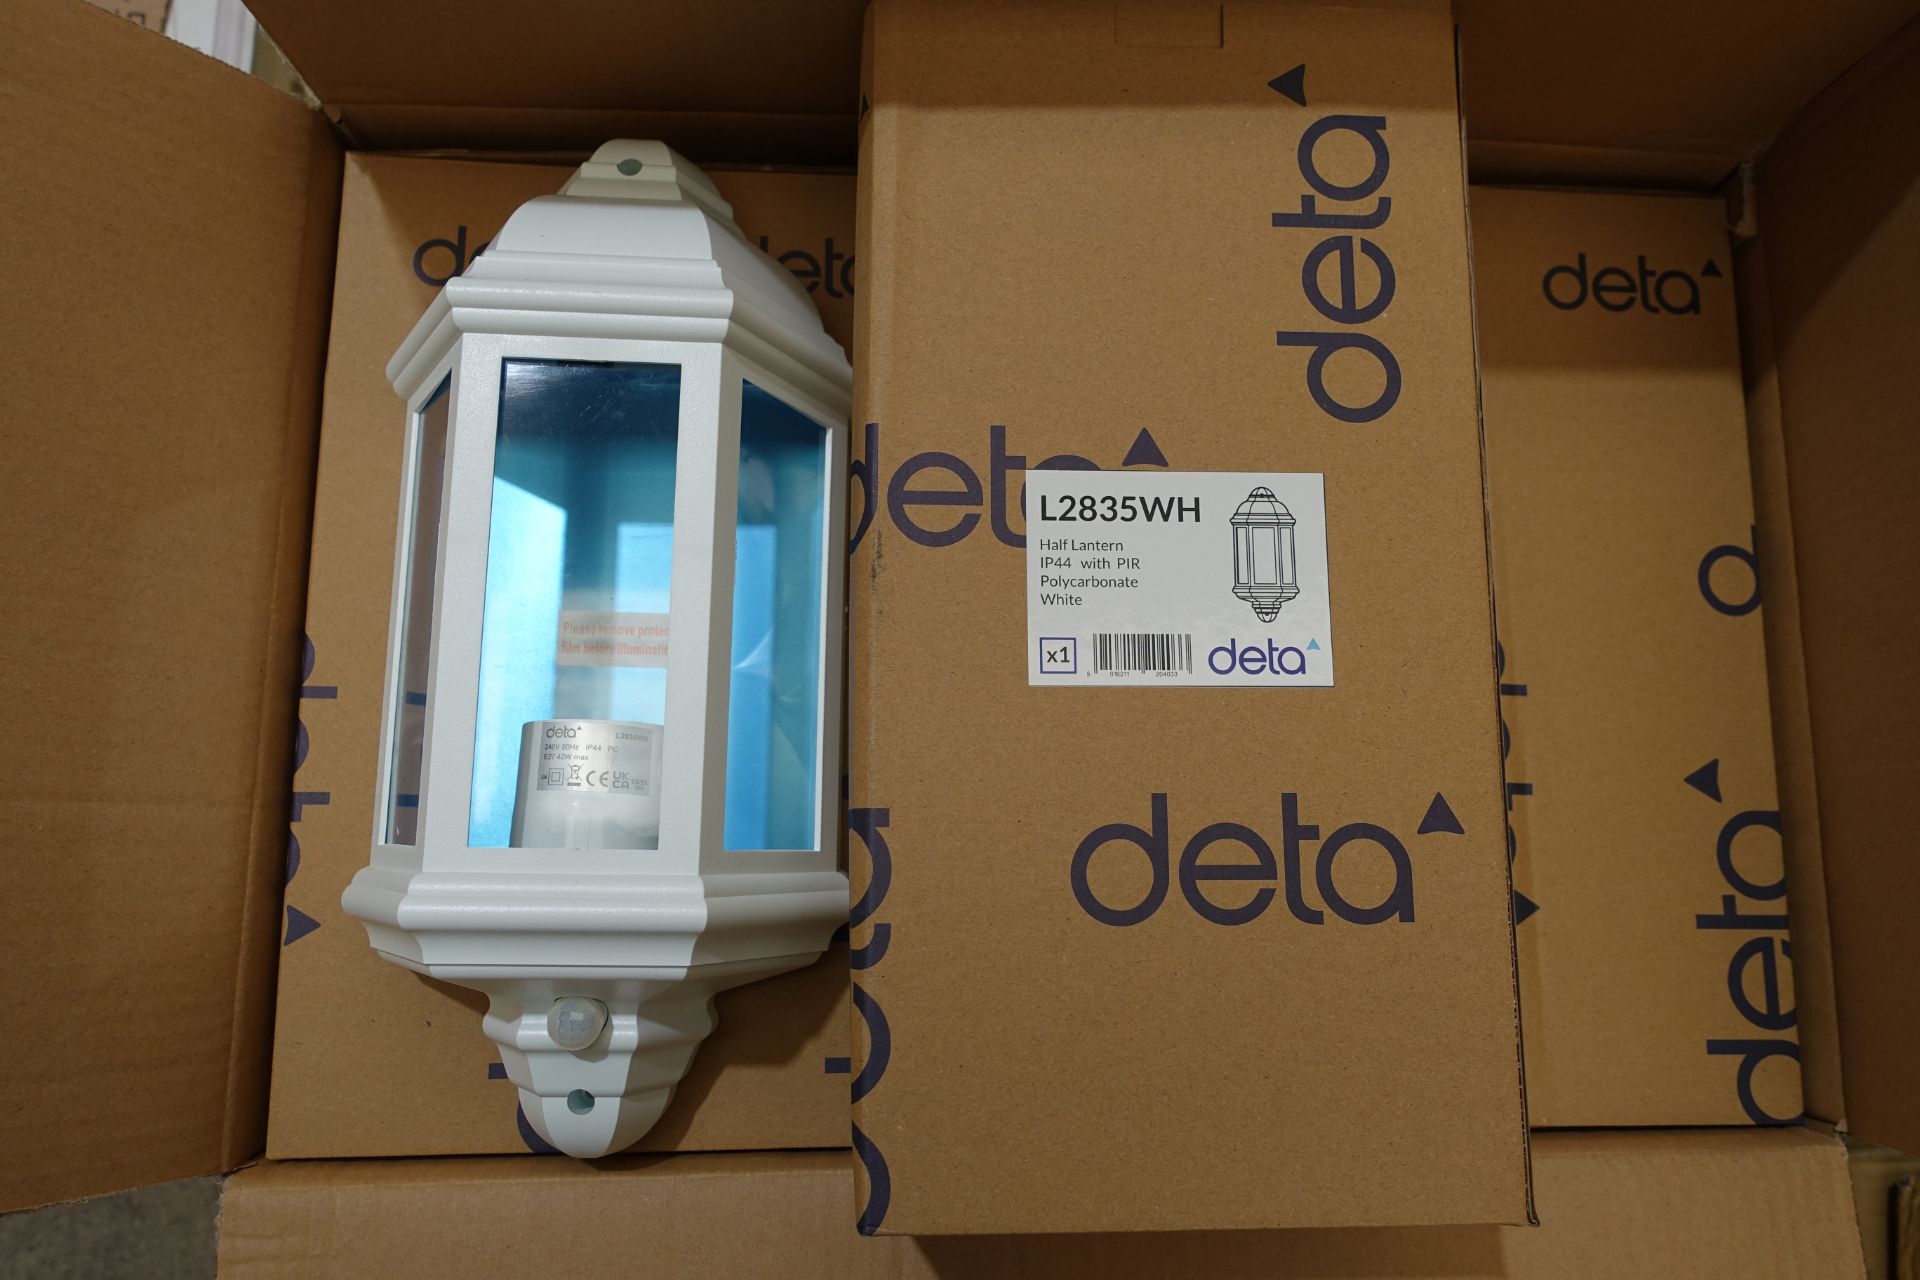 10 X Deta L2835WH Half Lantern with PIR White Polycarbonate Body IP44 E27 Fitting Max 42W